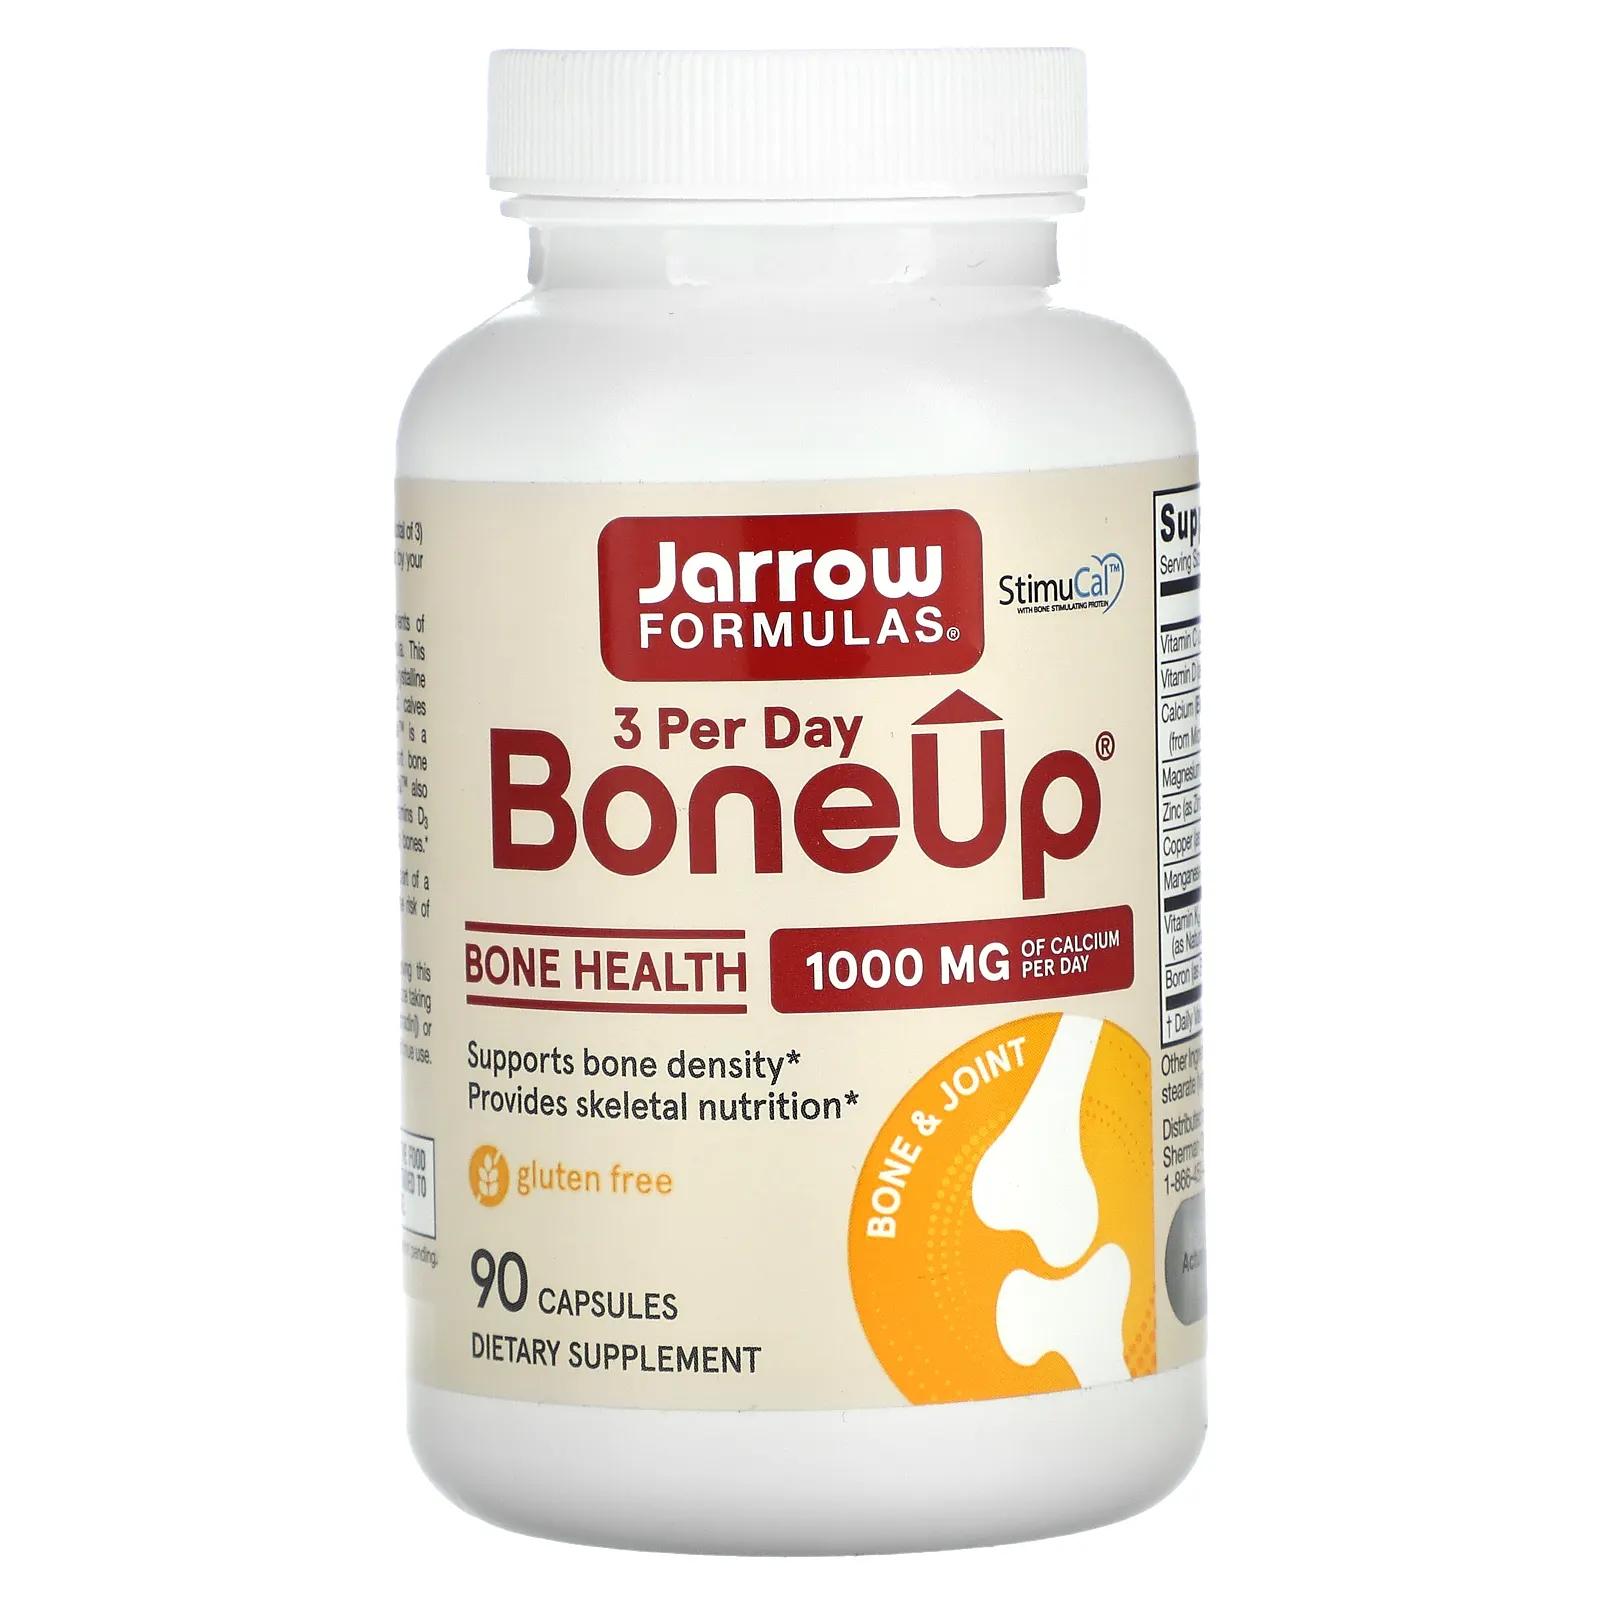 Jarrow Formulas Bone-Up 90 Капсулы jarrow formulas bone up три раза в день 90 капсул